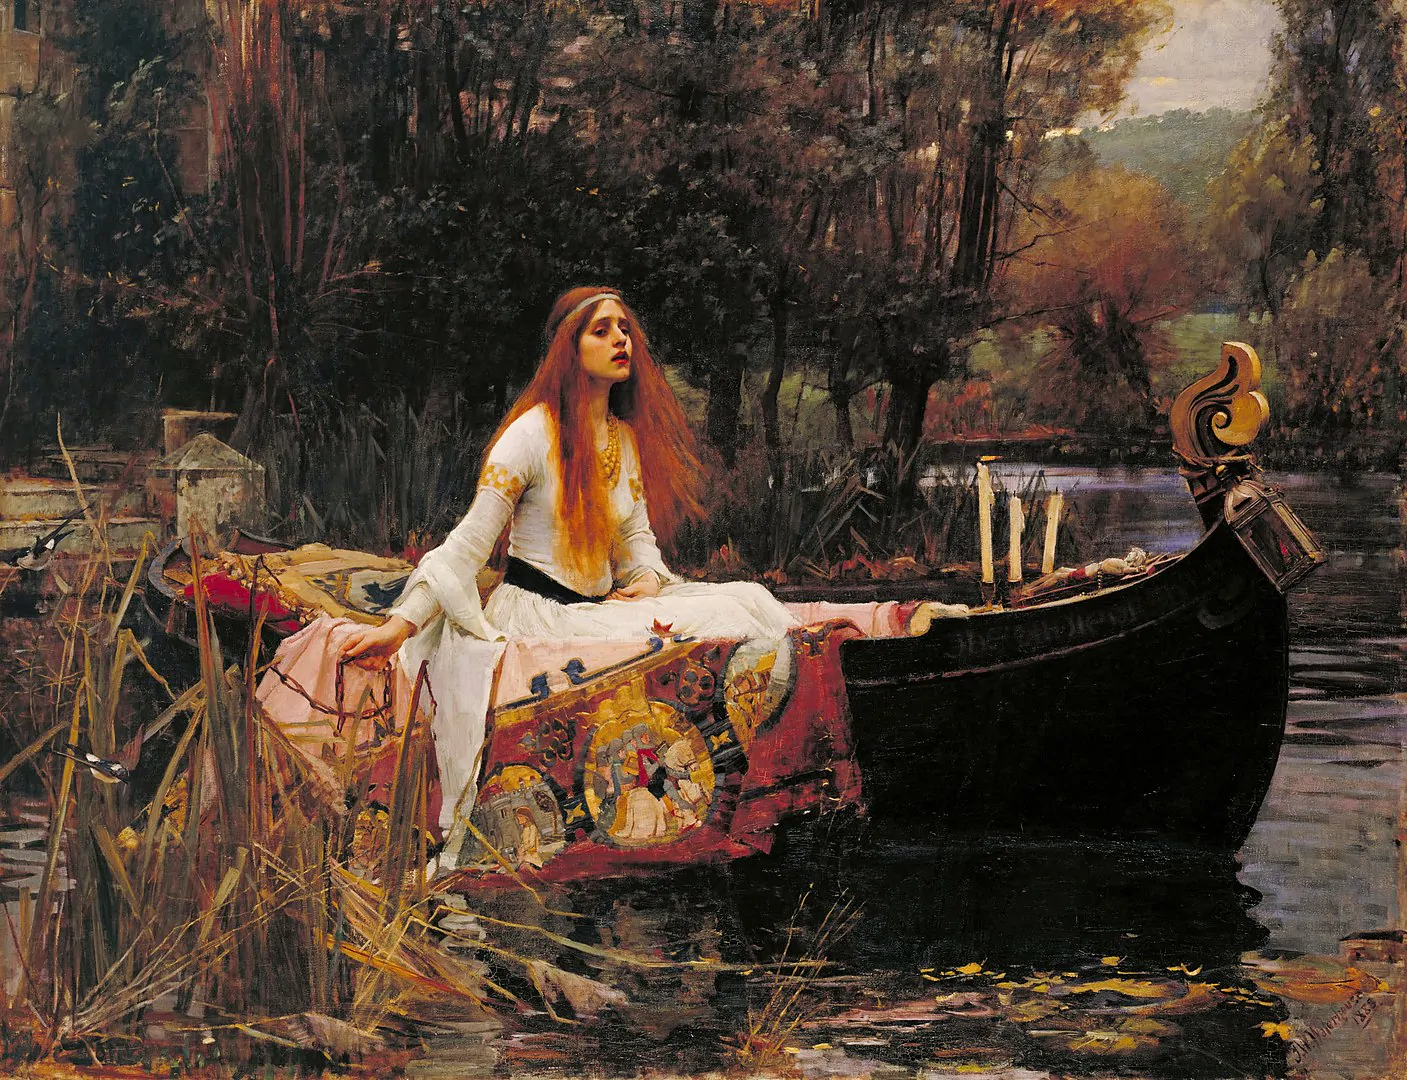 لوحة «السيدة شالوت» لجون ويليامز واترهاوس، من أبرز أمثلة استلهام مادة اللوحات الفنية من الشعر.